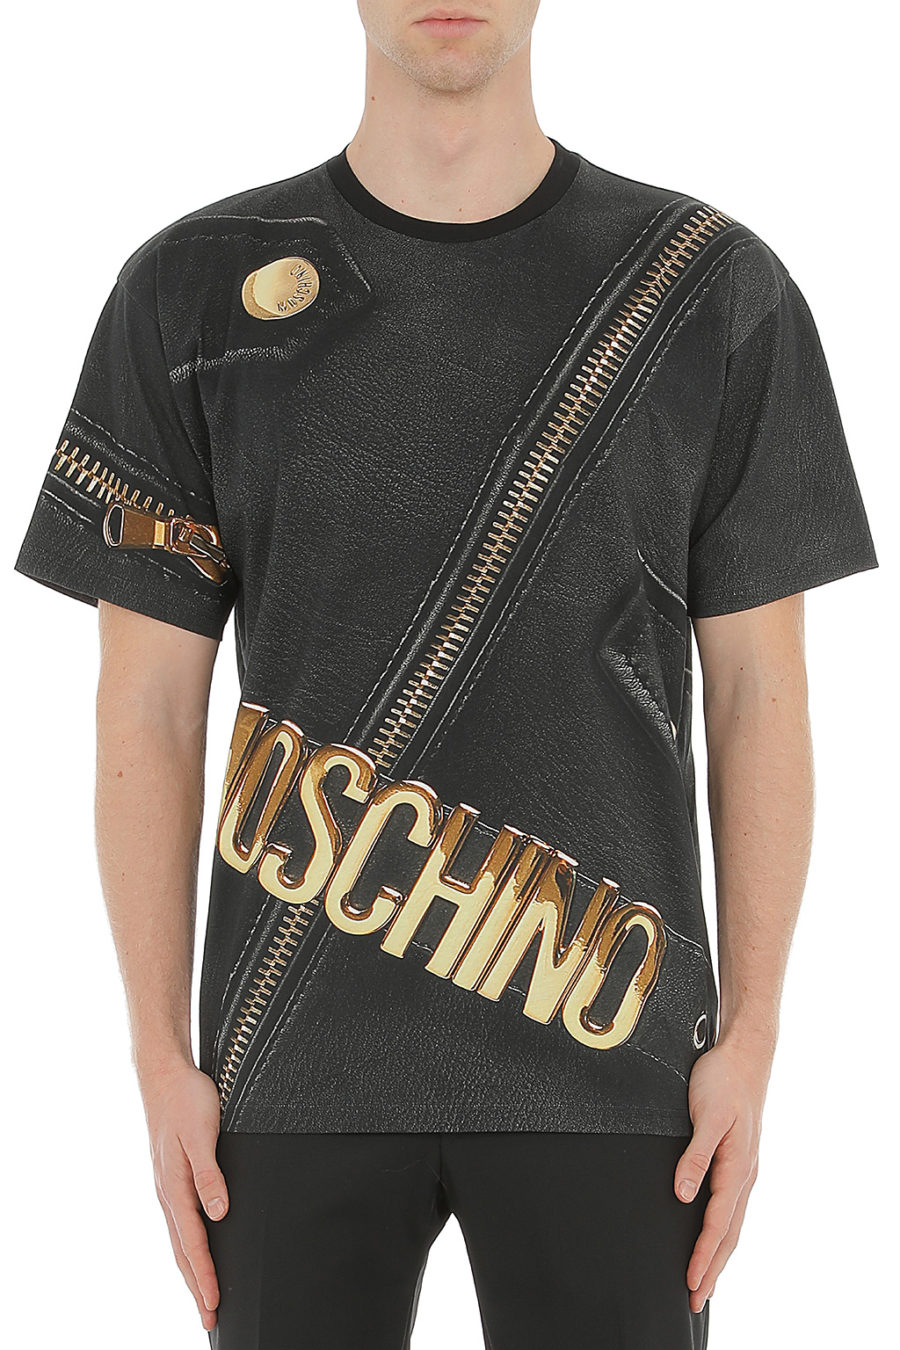 Camiseta Moschino Couture negra con cremallera doradas - 0709 5240 1888